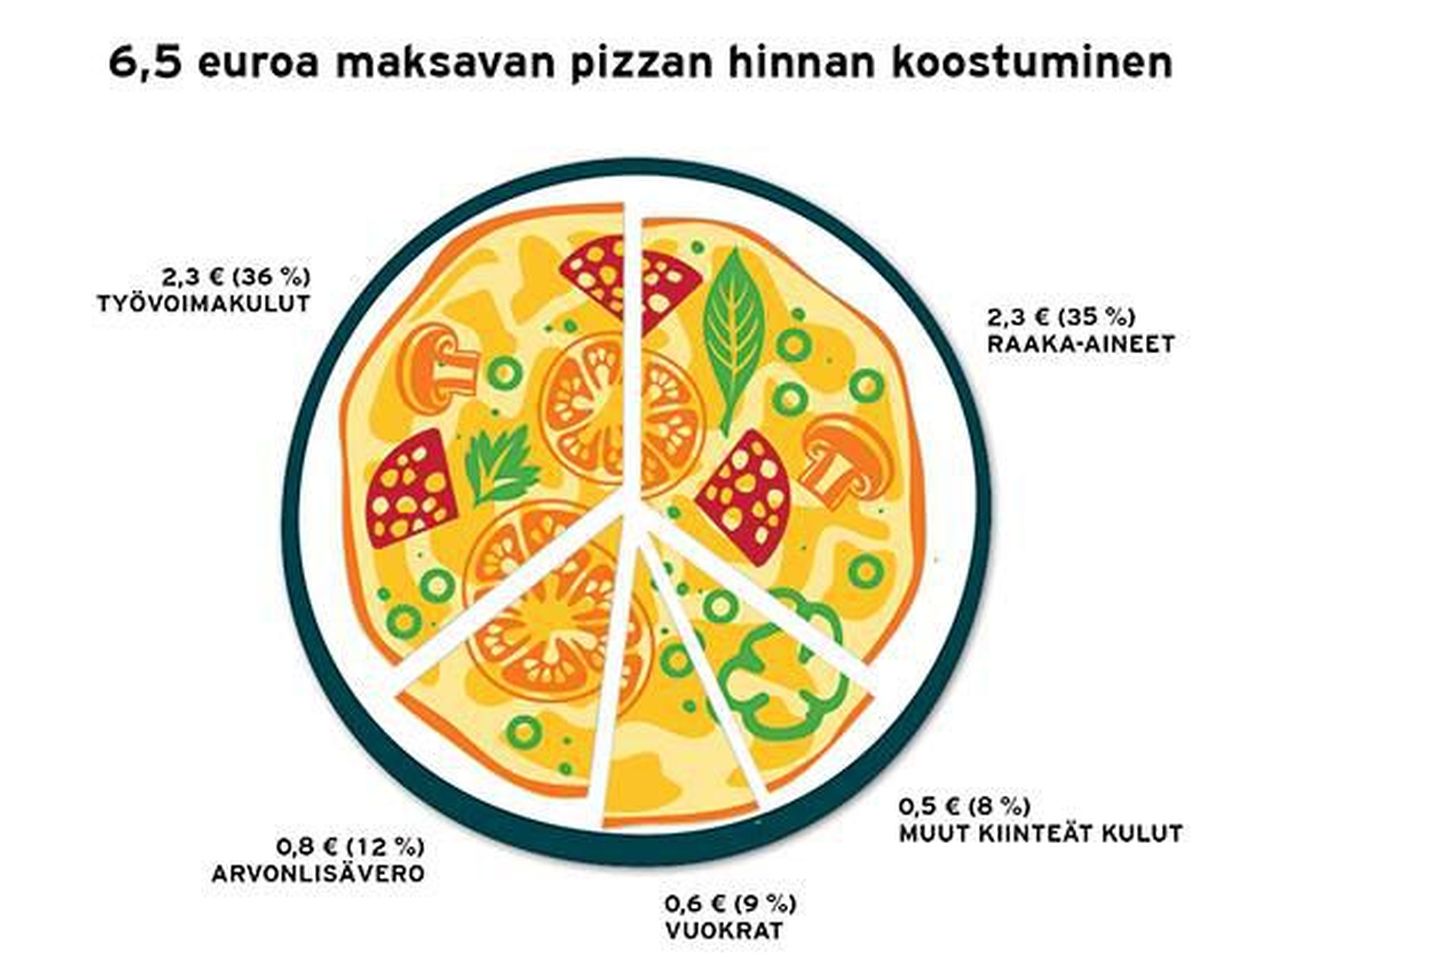 Kõiki seadusi järgides peaks pitsa Soomes maksma vähemalt 6,5 eurot.